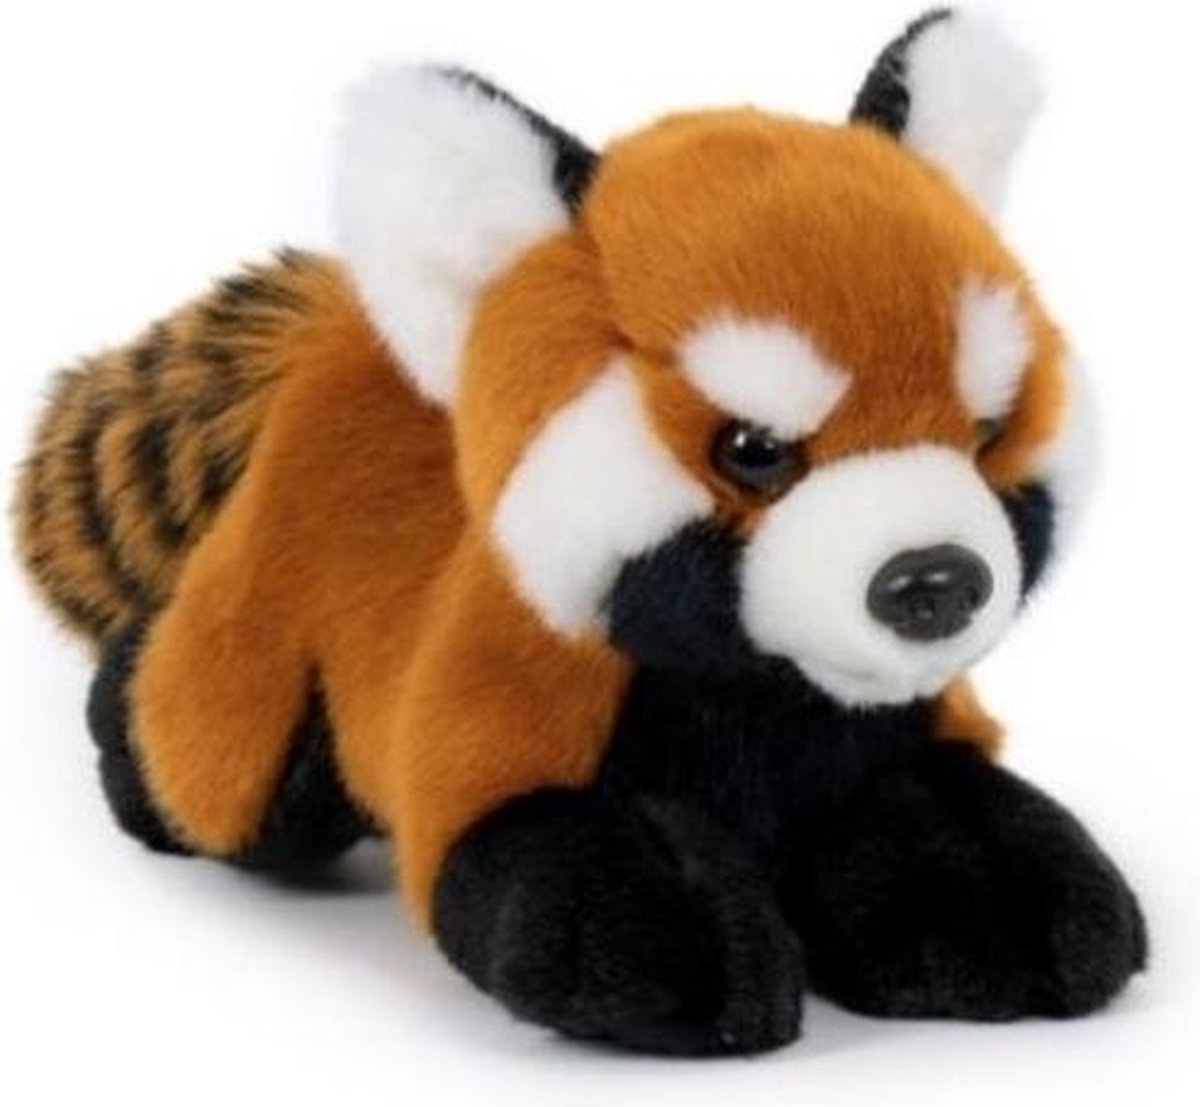 Pluche rode panda knuffel 20 cm - Pandabeer bosdieren knuffels - Speelgoed voor kinderen - Merkloos